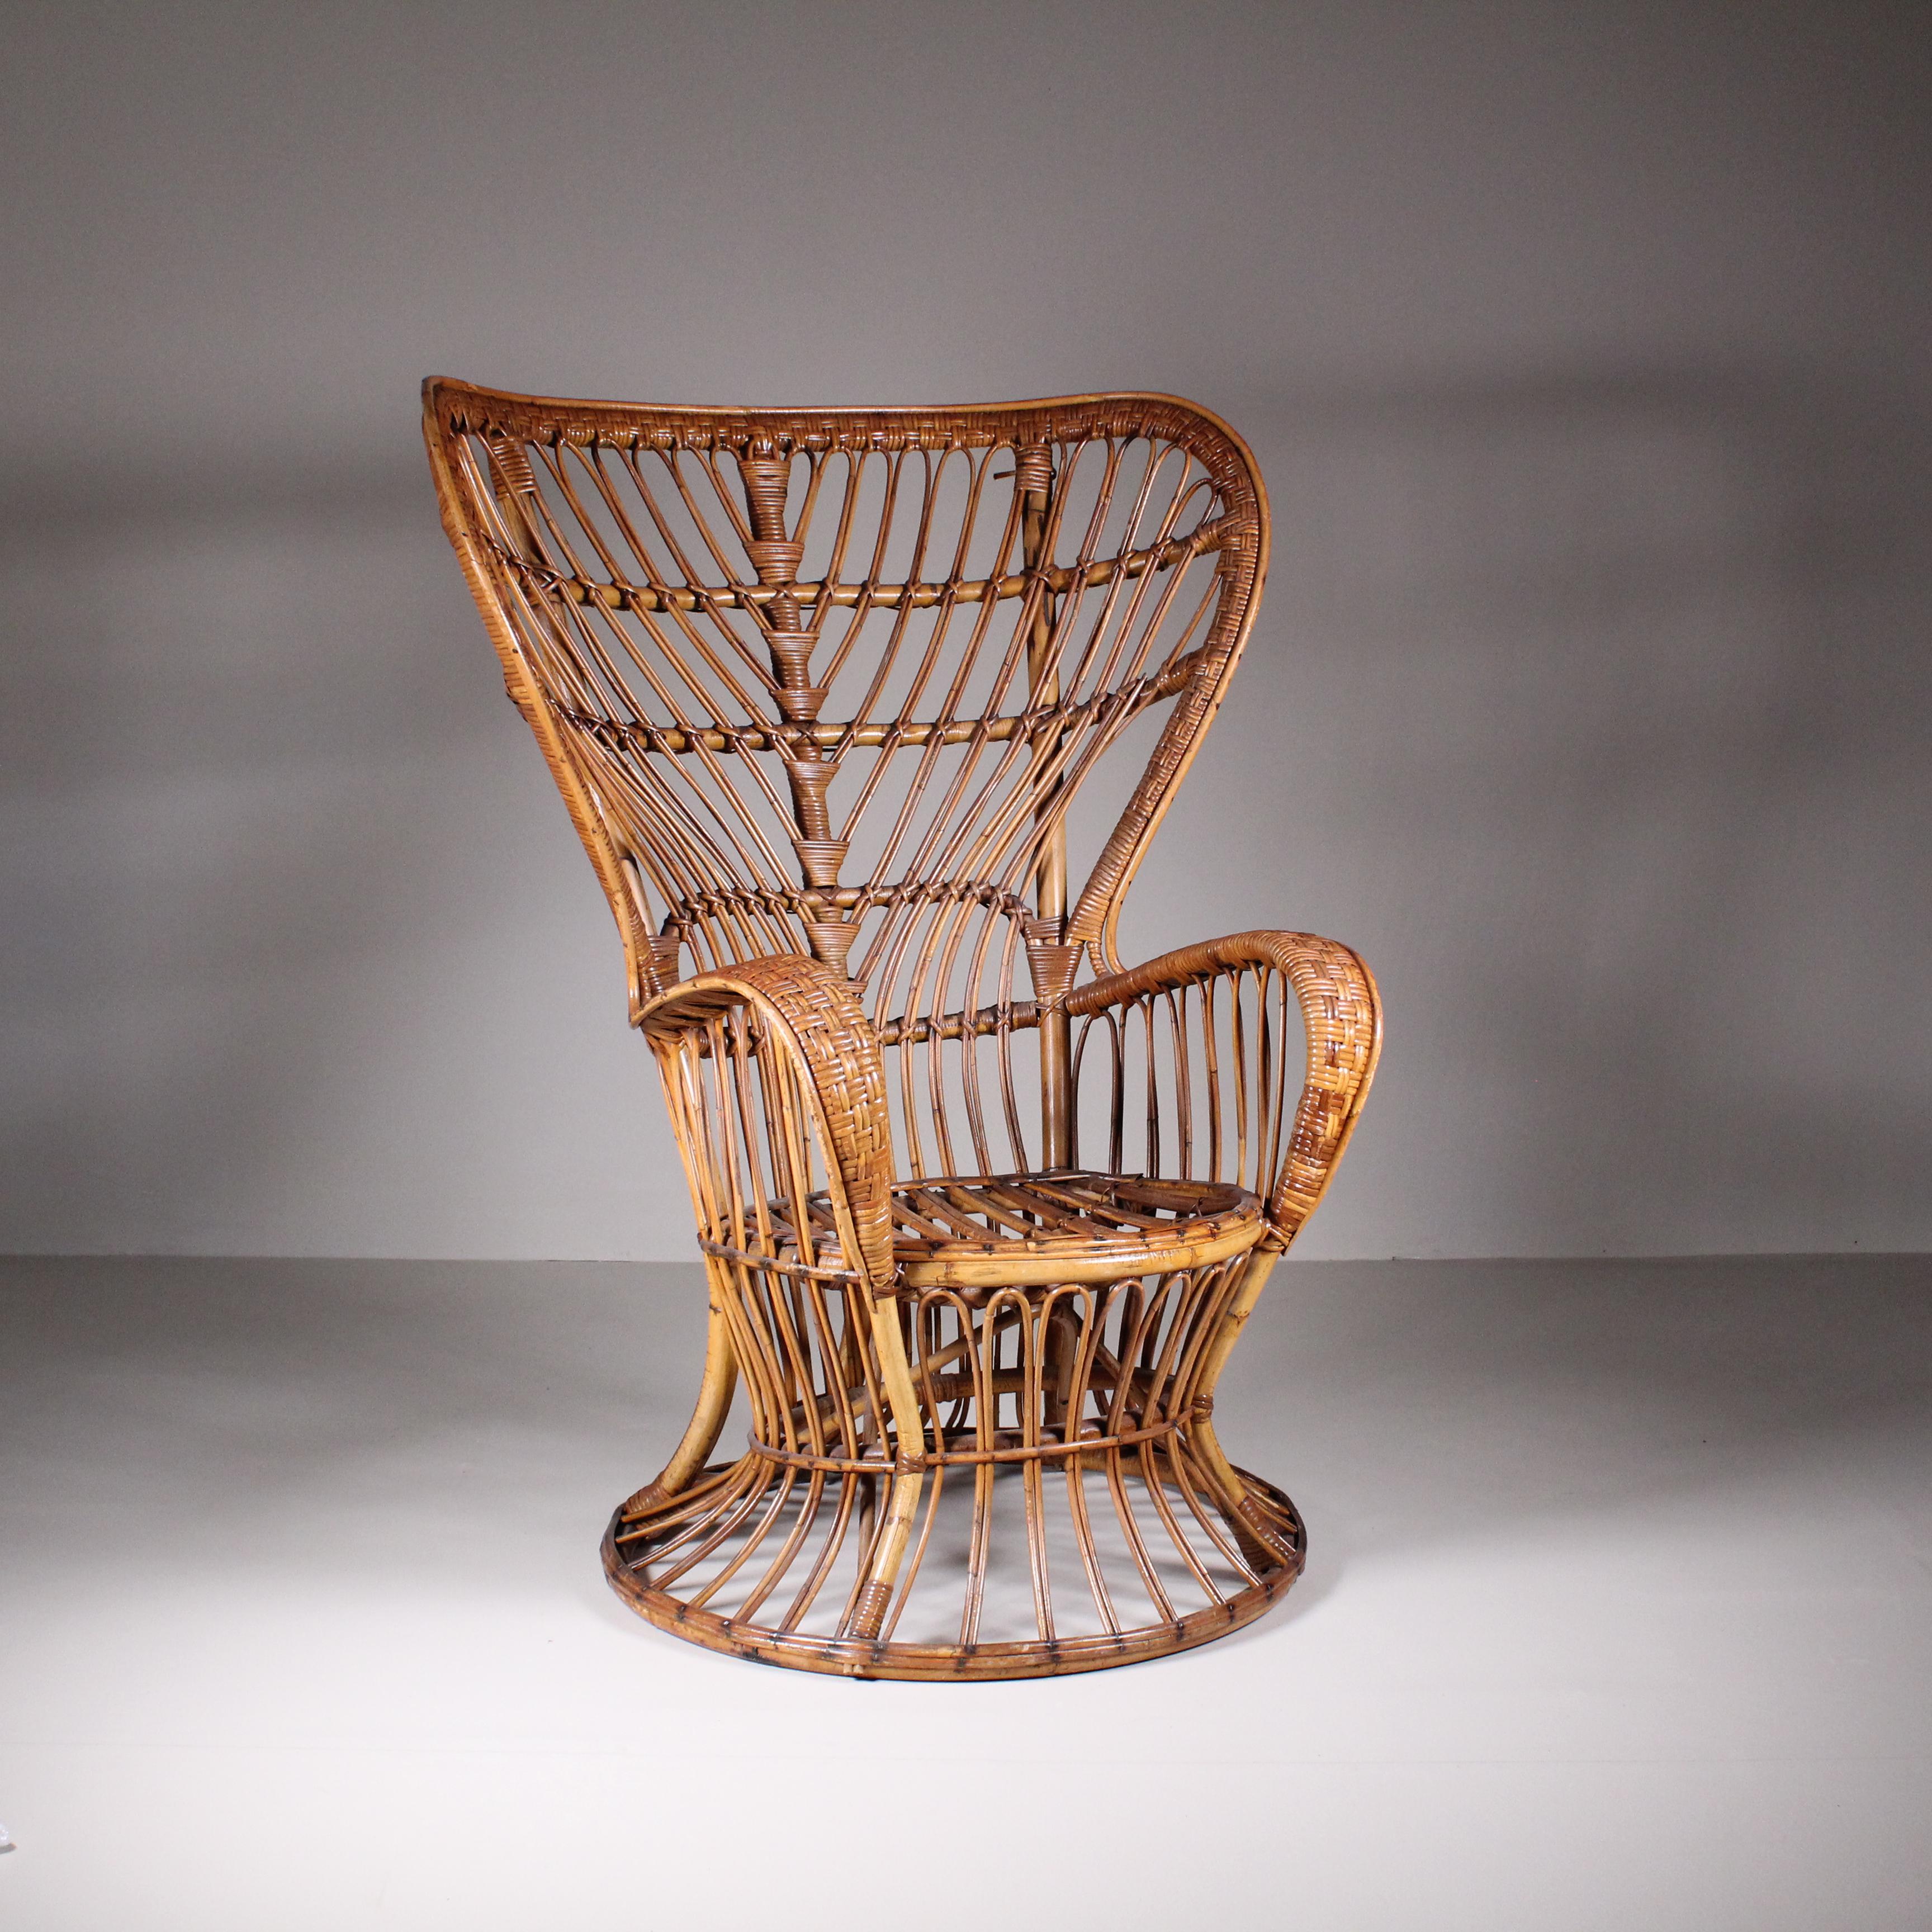 L'ensemble de deux fauteuils en rotin de Lio Carminati, vers 1960, témoigne de l'attrait durable du design du milieu du siècle et du savoir-faire du designer italien Lio Carminati. Incarnant l'essence de la sophistication et du confort, ces